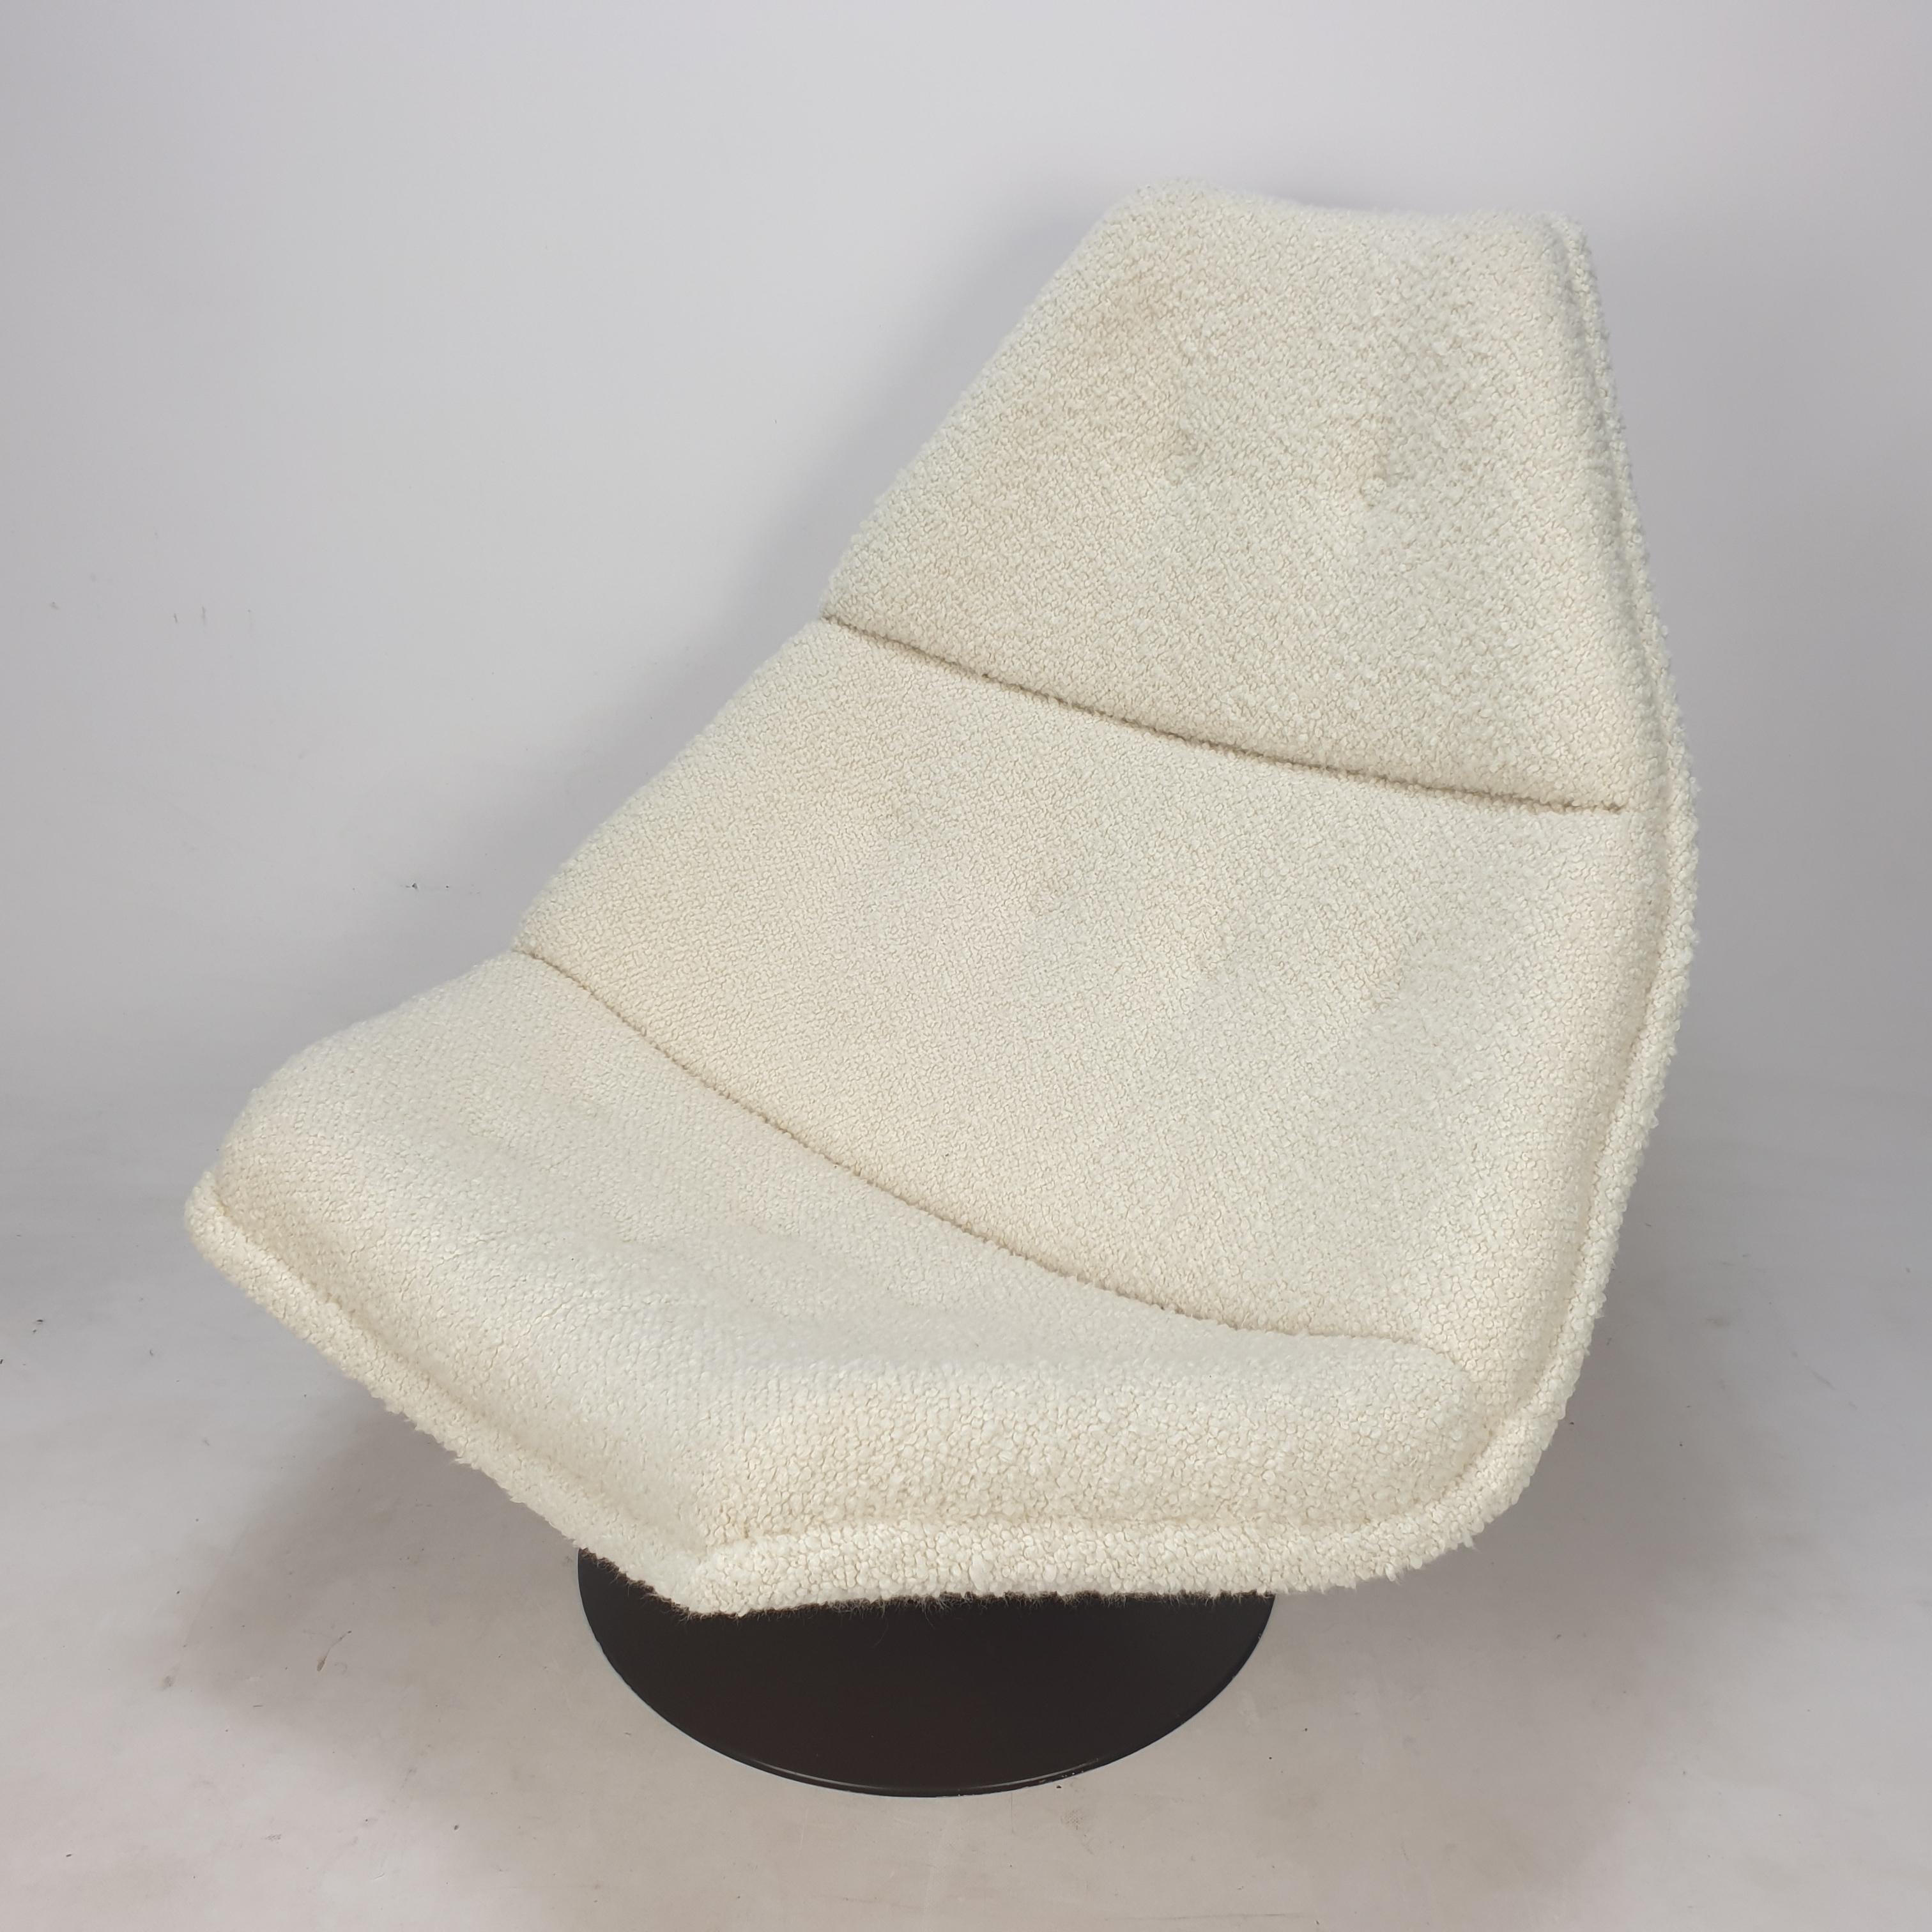 Chaise longue Artifort très confortable. 
Conçu par le célèbre designer anglais Geoffrey Harcourt dans les années 60. 

La chaise vient d'être restaurée avec un nouveau tissu et une nouvelle mousse.
Elle a été retapissée avec un tissu bouclé